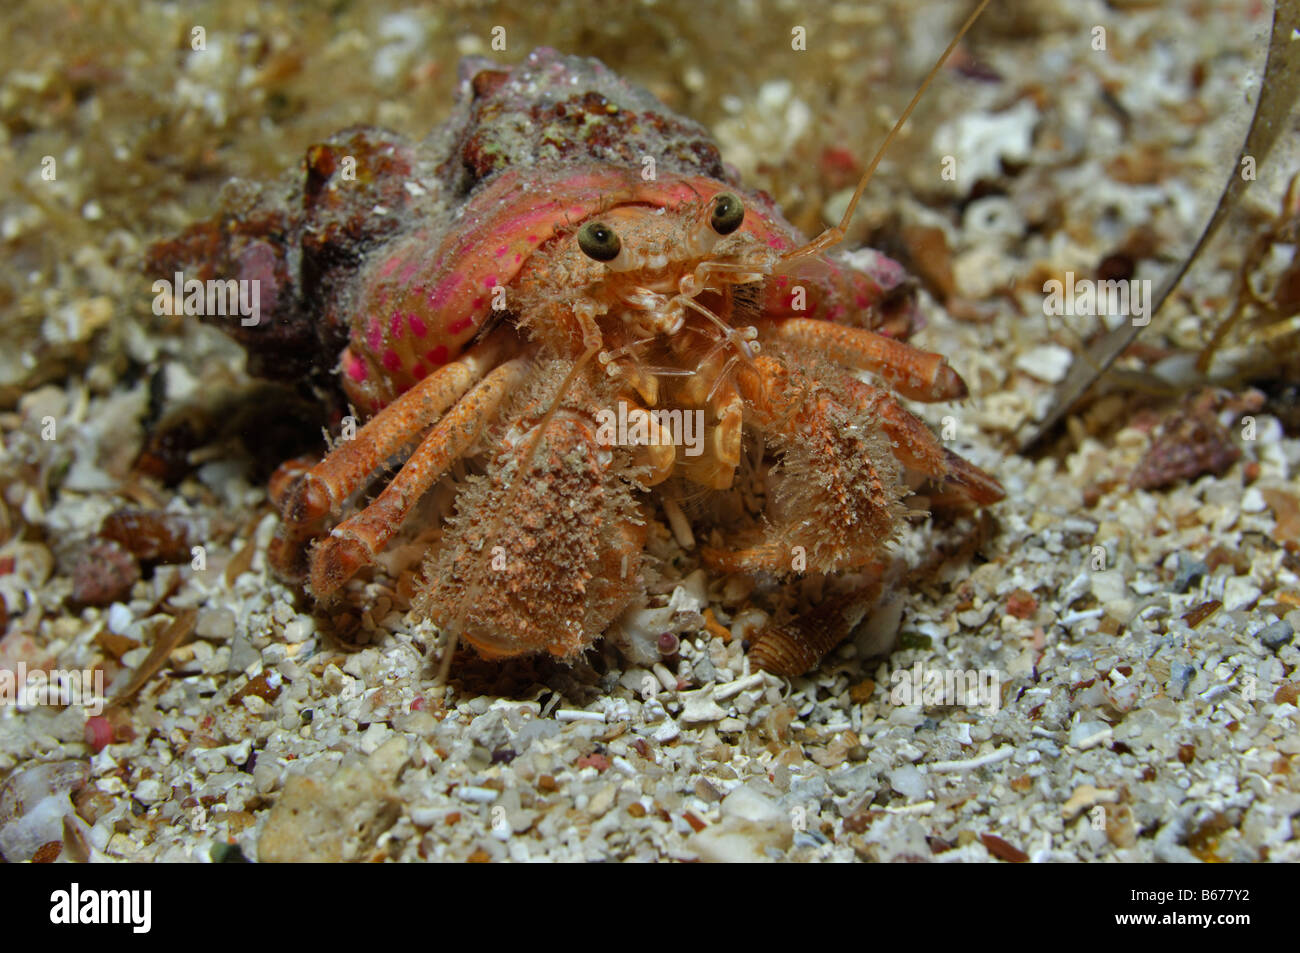 Anemone Hermit Crab Pagurus prideaux Susac Island Adriatic Sea Croatia Stock Photo